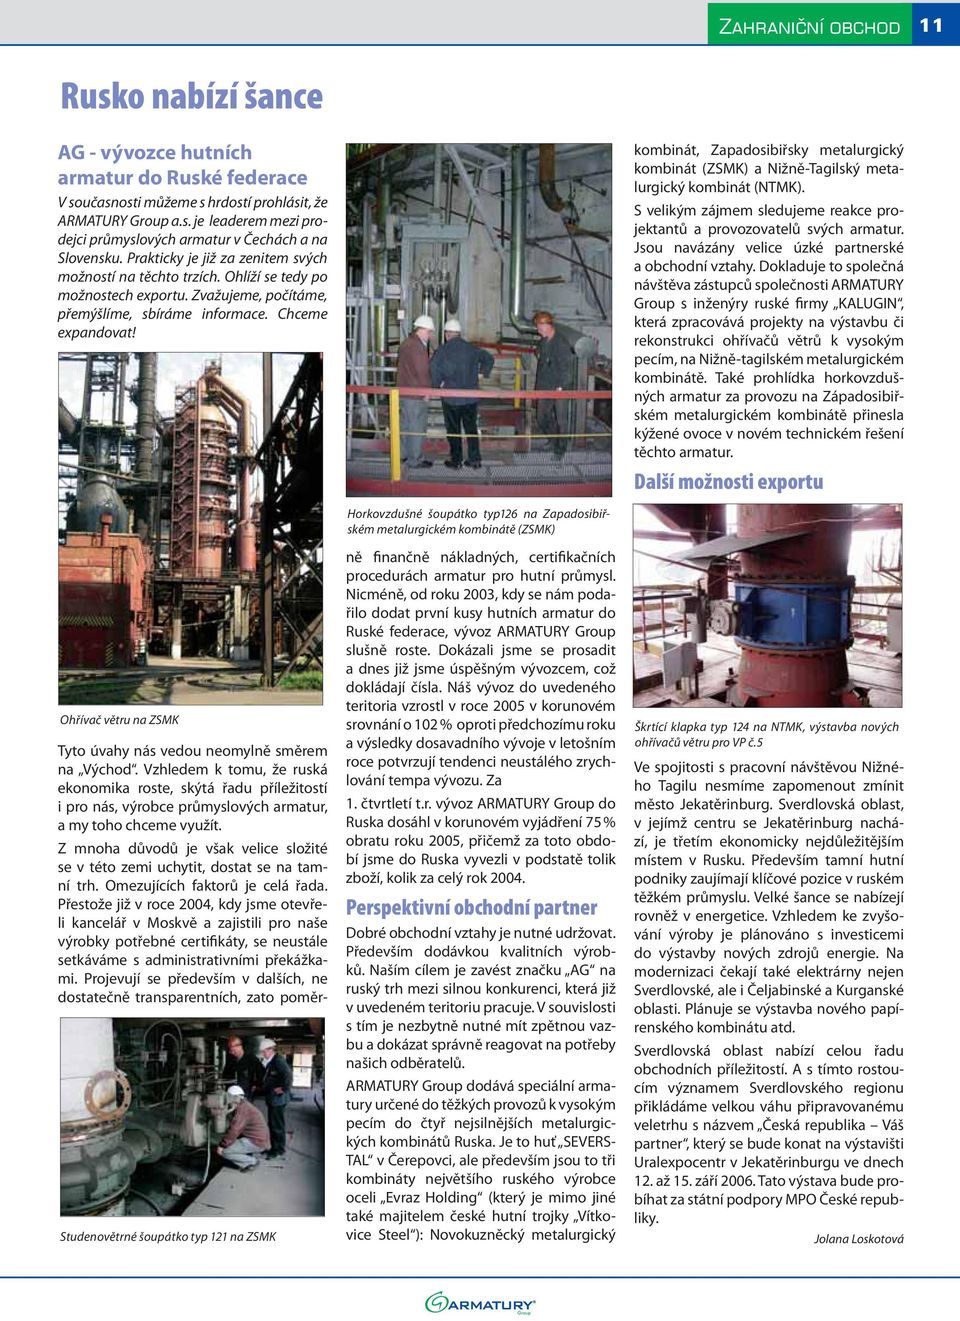 kombinát, Zapadosibiřsky metalurgický kombinát (ZSMK) a Nižně-Tagilský metalurgický kombinát (NTMK). S velikým zájmem sledujeme reakce projektantů a provozovatelů svých armatur.